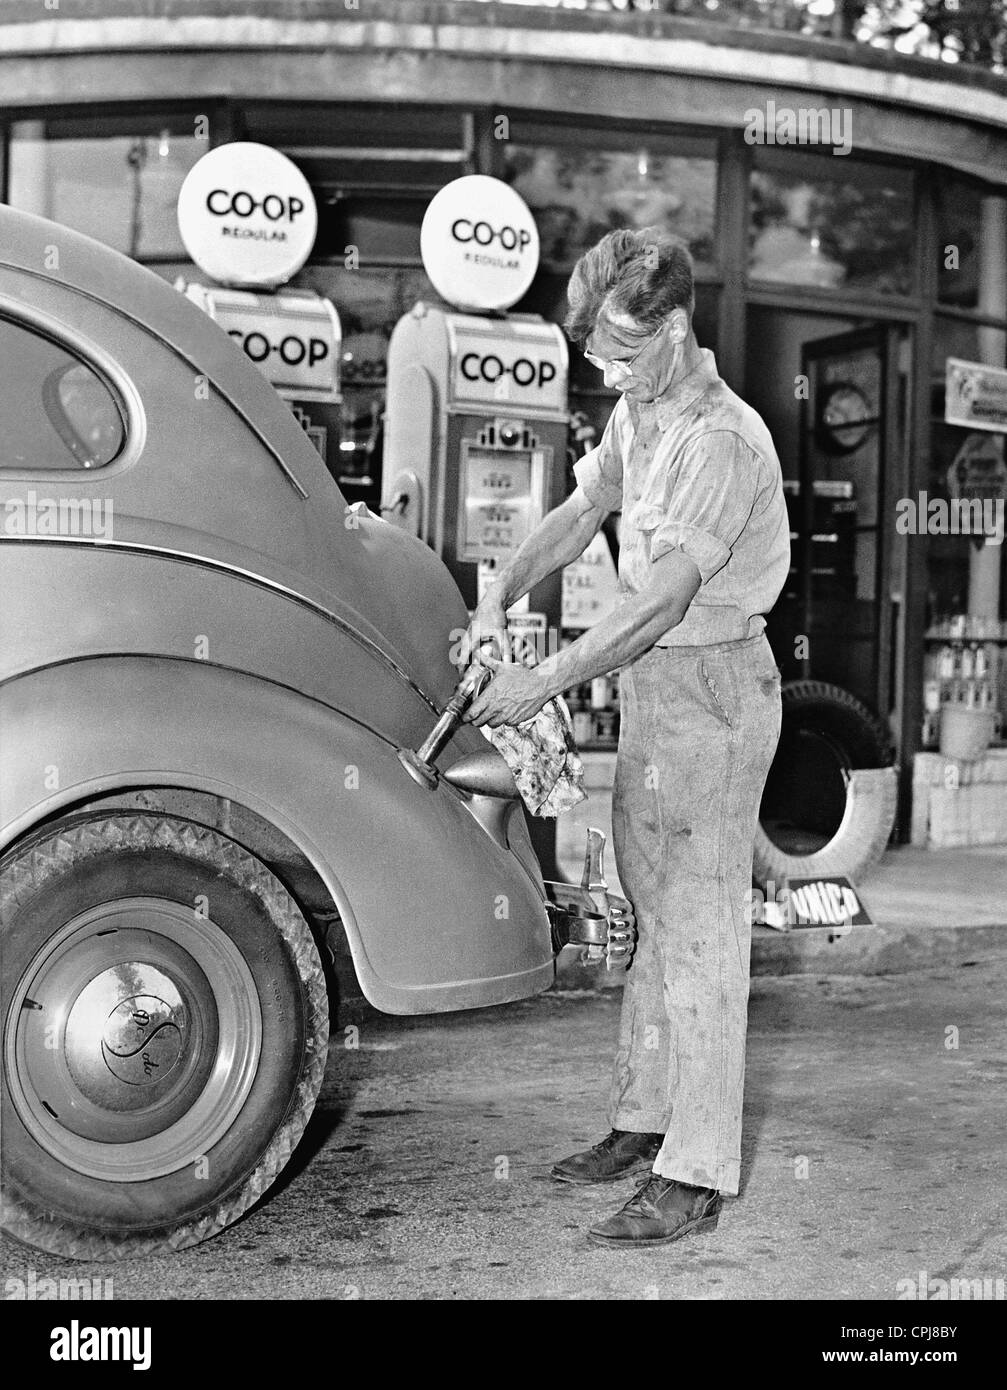 La stazione di gas di co-op, 1938 Foto Stock